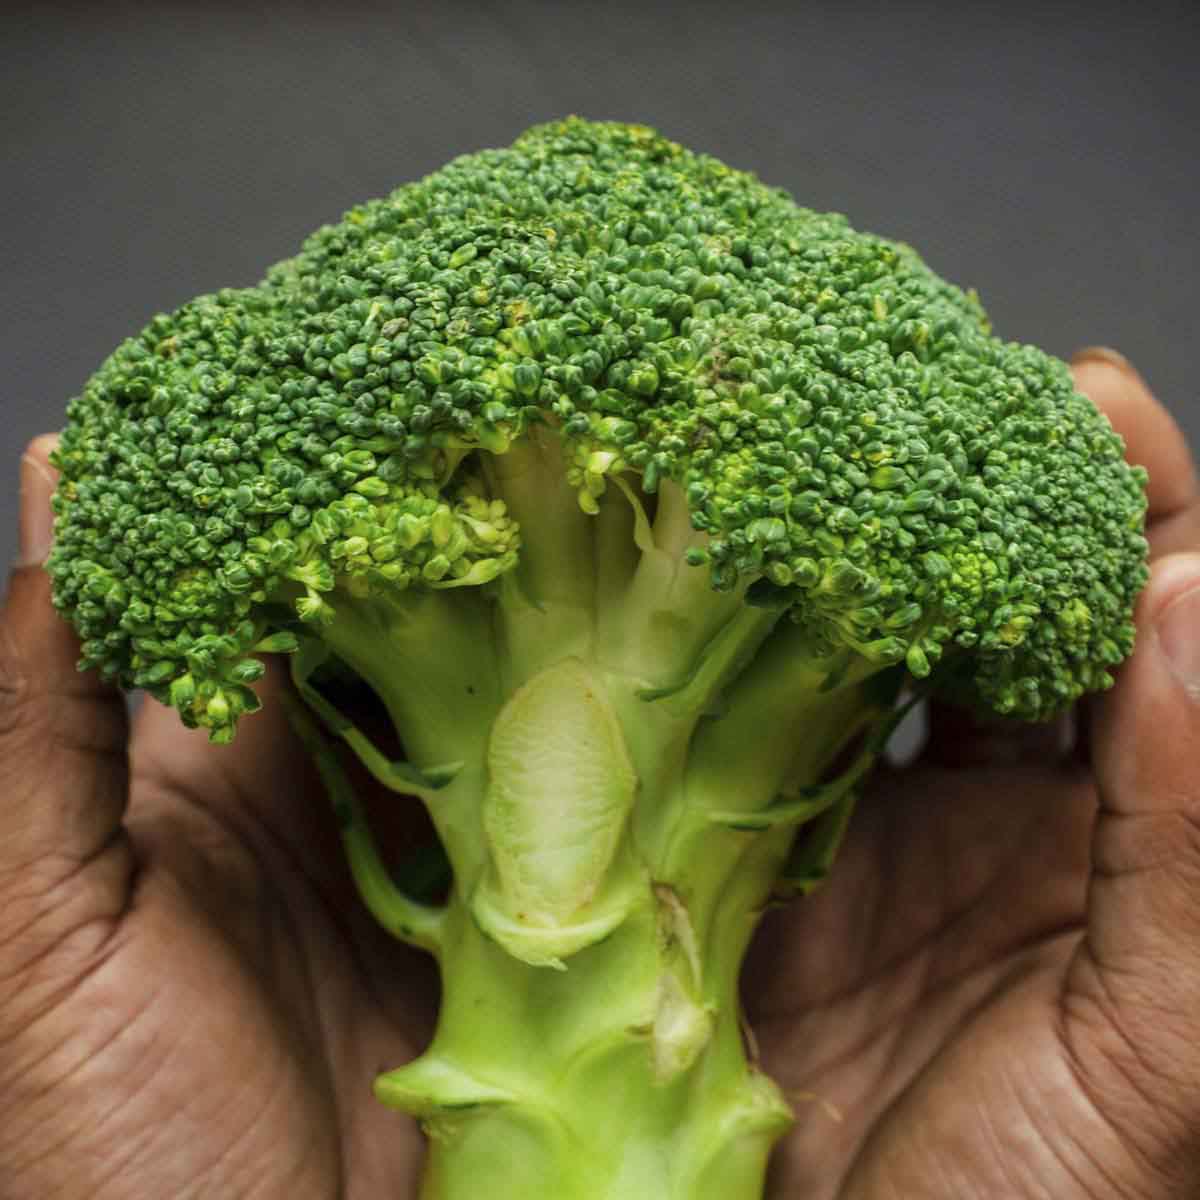 Large broccoli flouret cradled in hands.